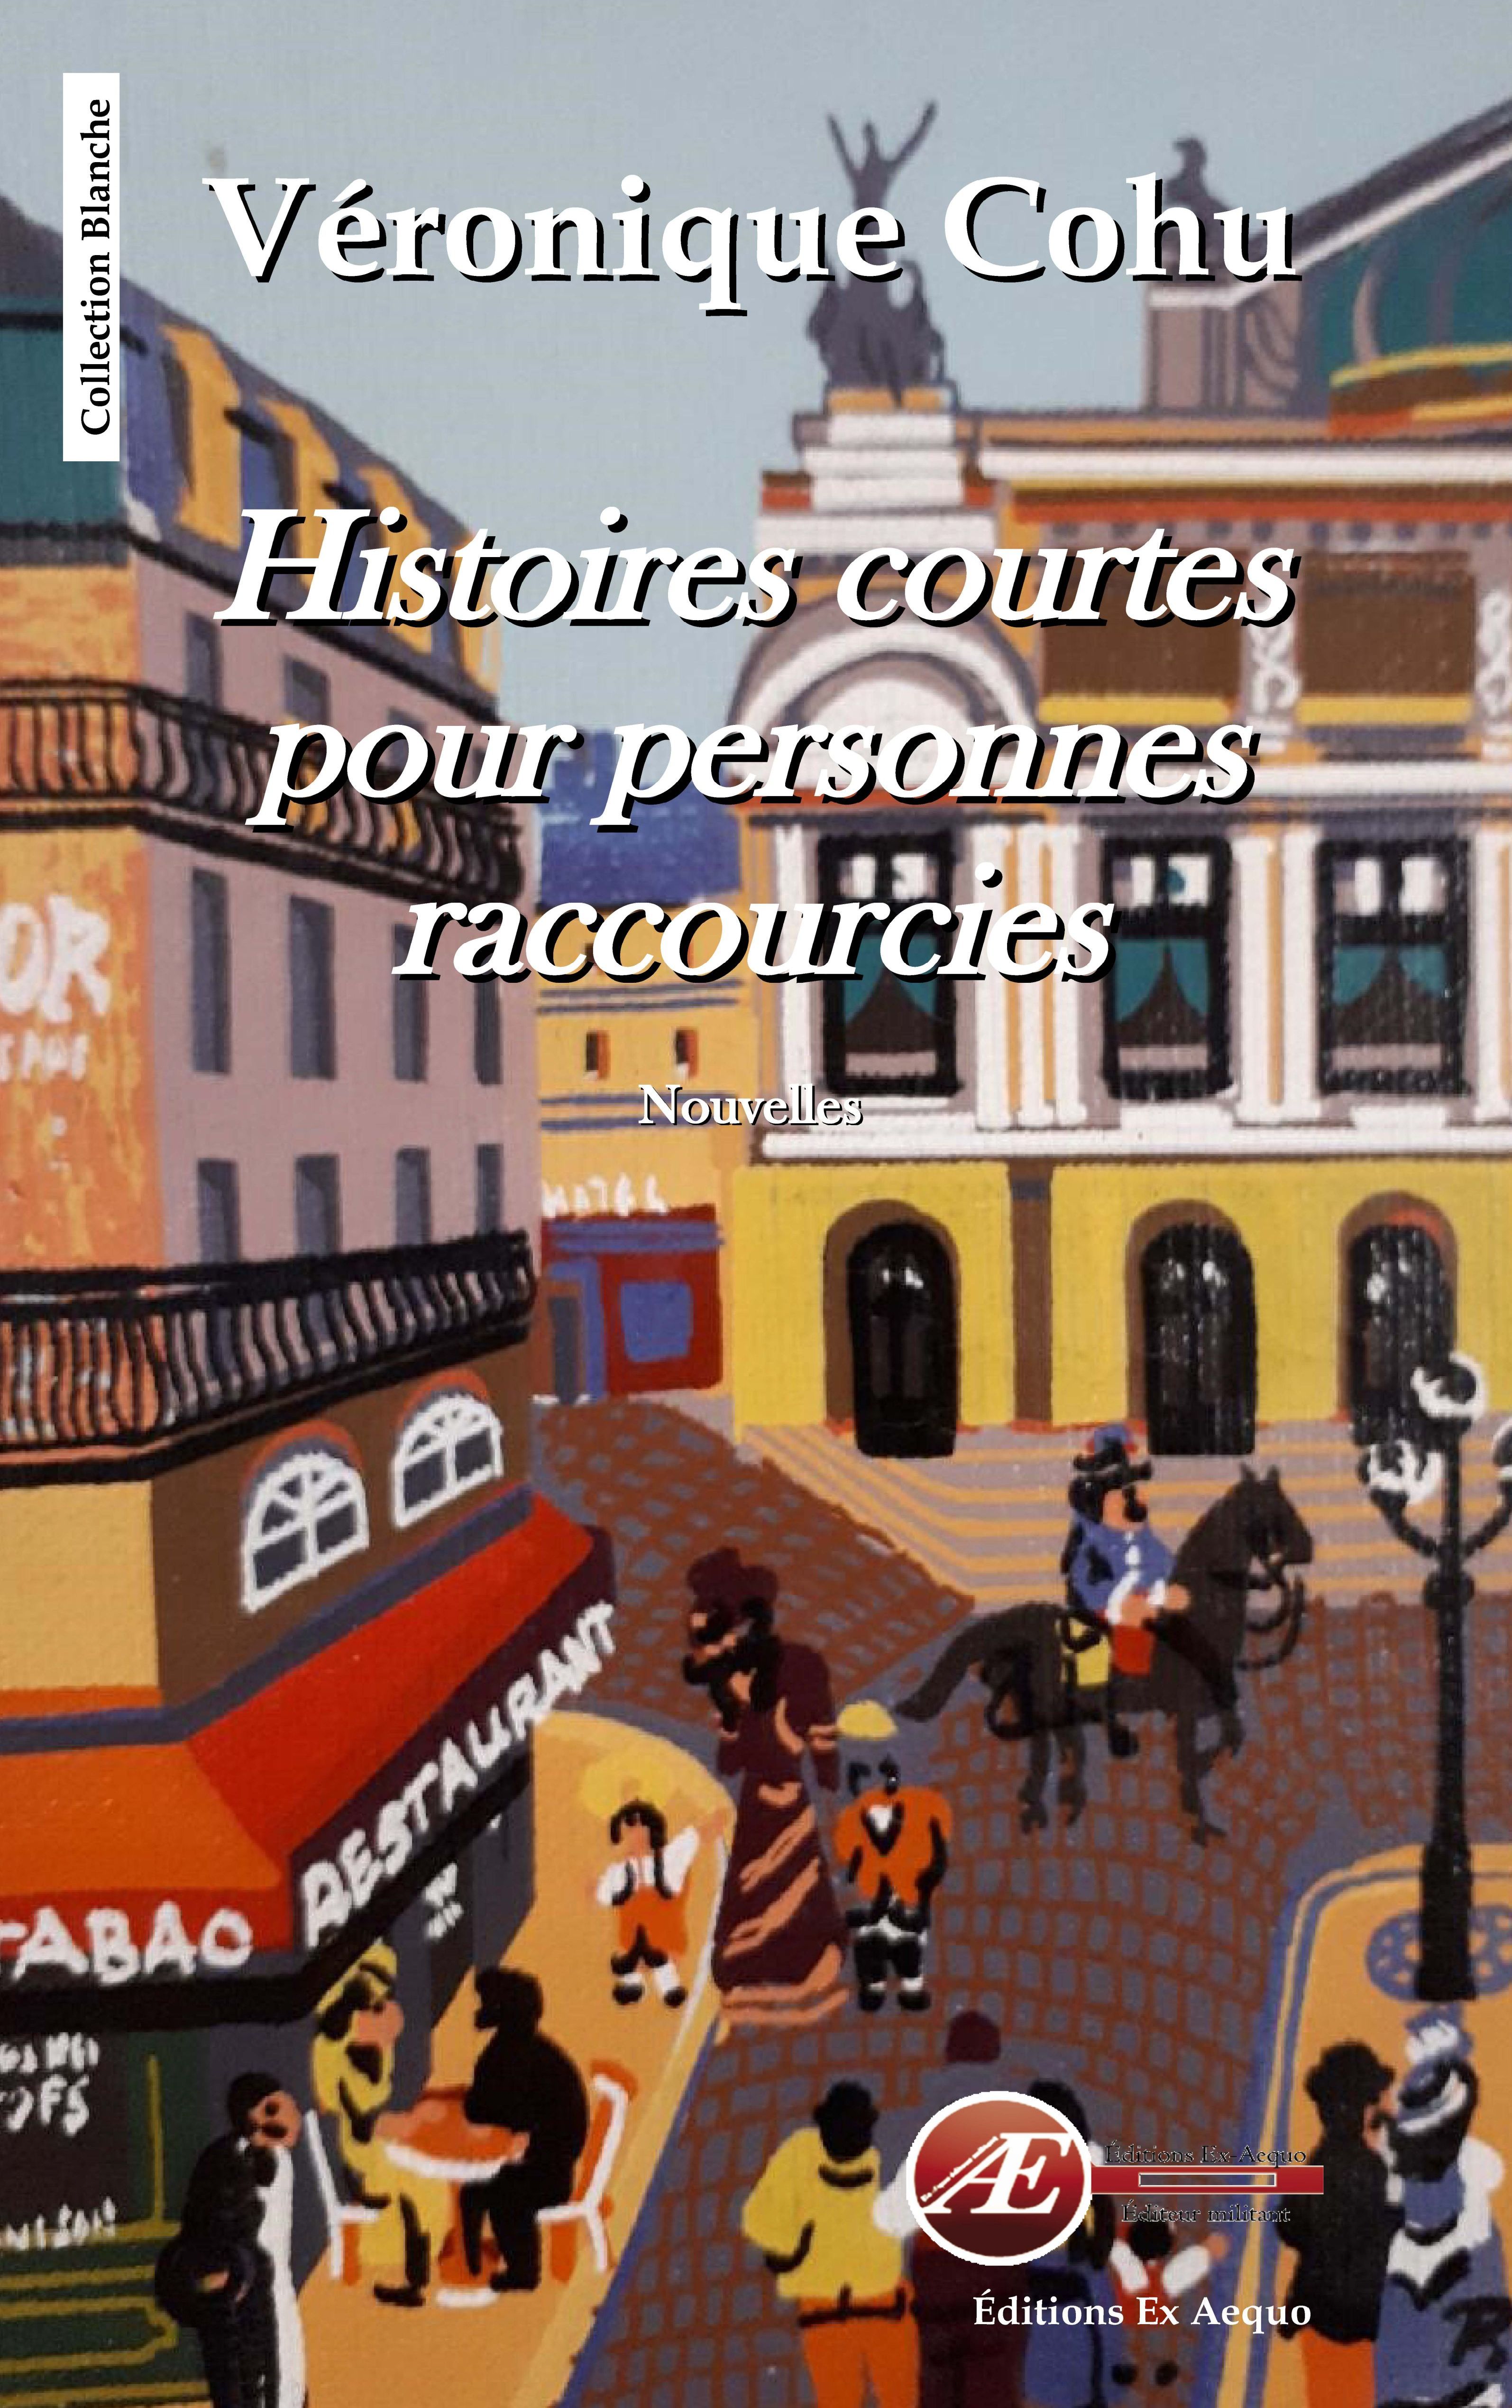 You are currently viewing Histoires courtes pour personnes raccourcies, de Véronique Cohu